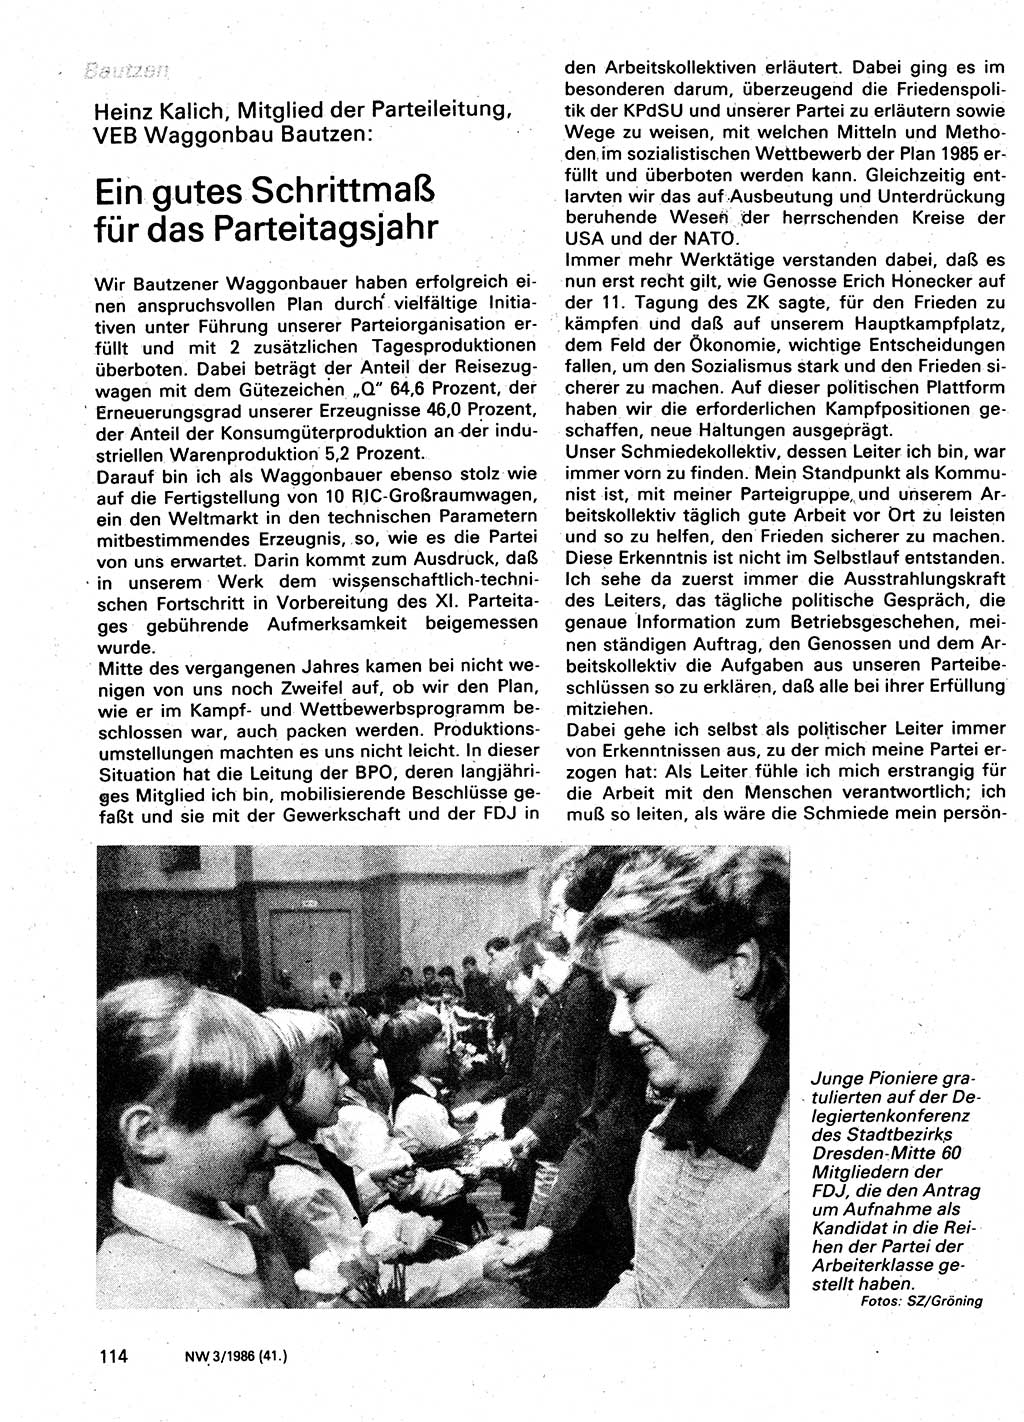 Neuer Weg (NW), Organ des Zentralkomitees (ZK) der SED (Sozialistische Einheitspartei Deutschlands) für Fragen des Parteilebens, 41. Jahrgang [Deutsche Demokratische Republik (DDR)] 1986, Seite 114 (NW ZK SED DDR 1986, S. 114)